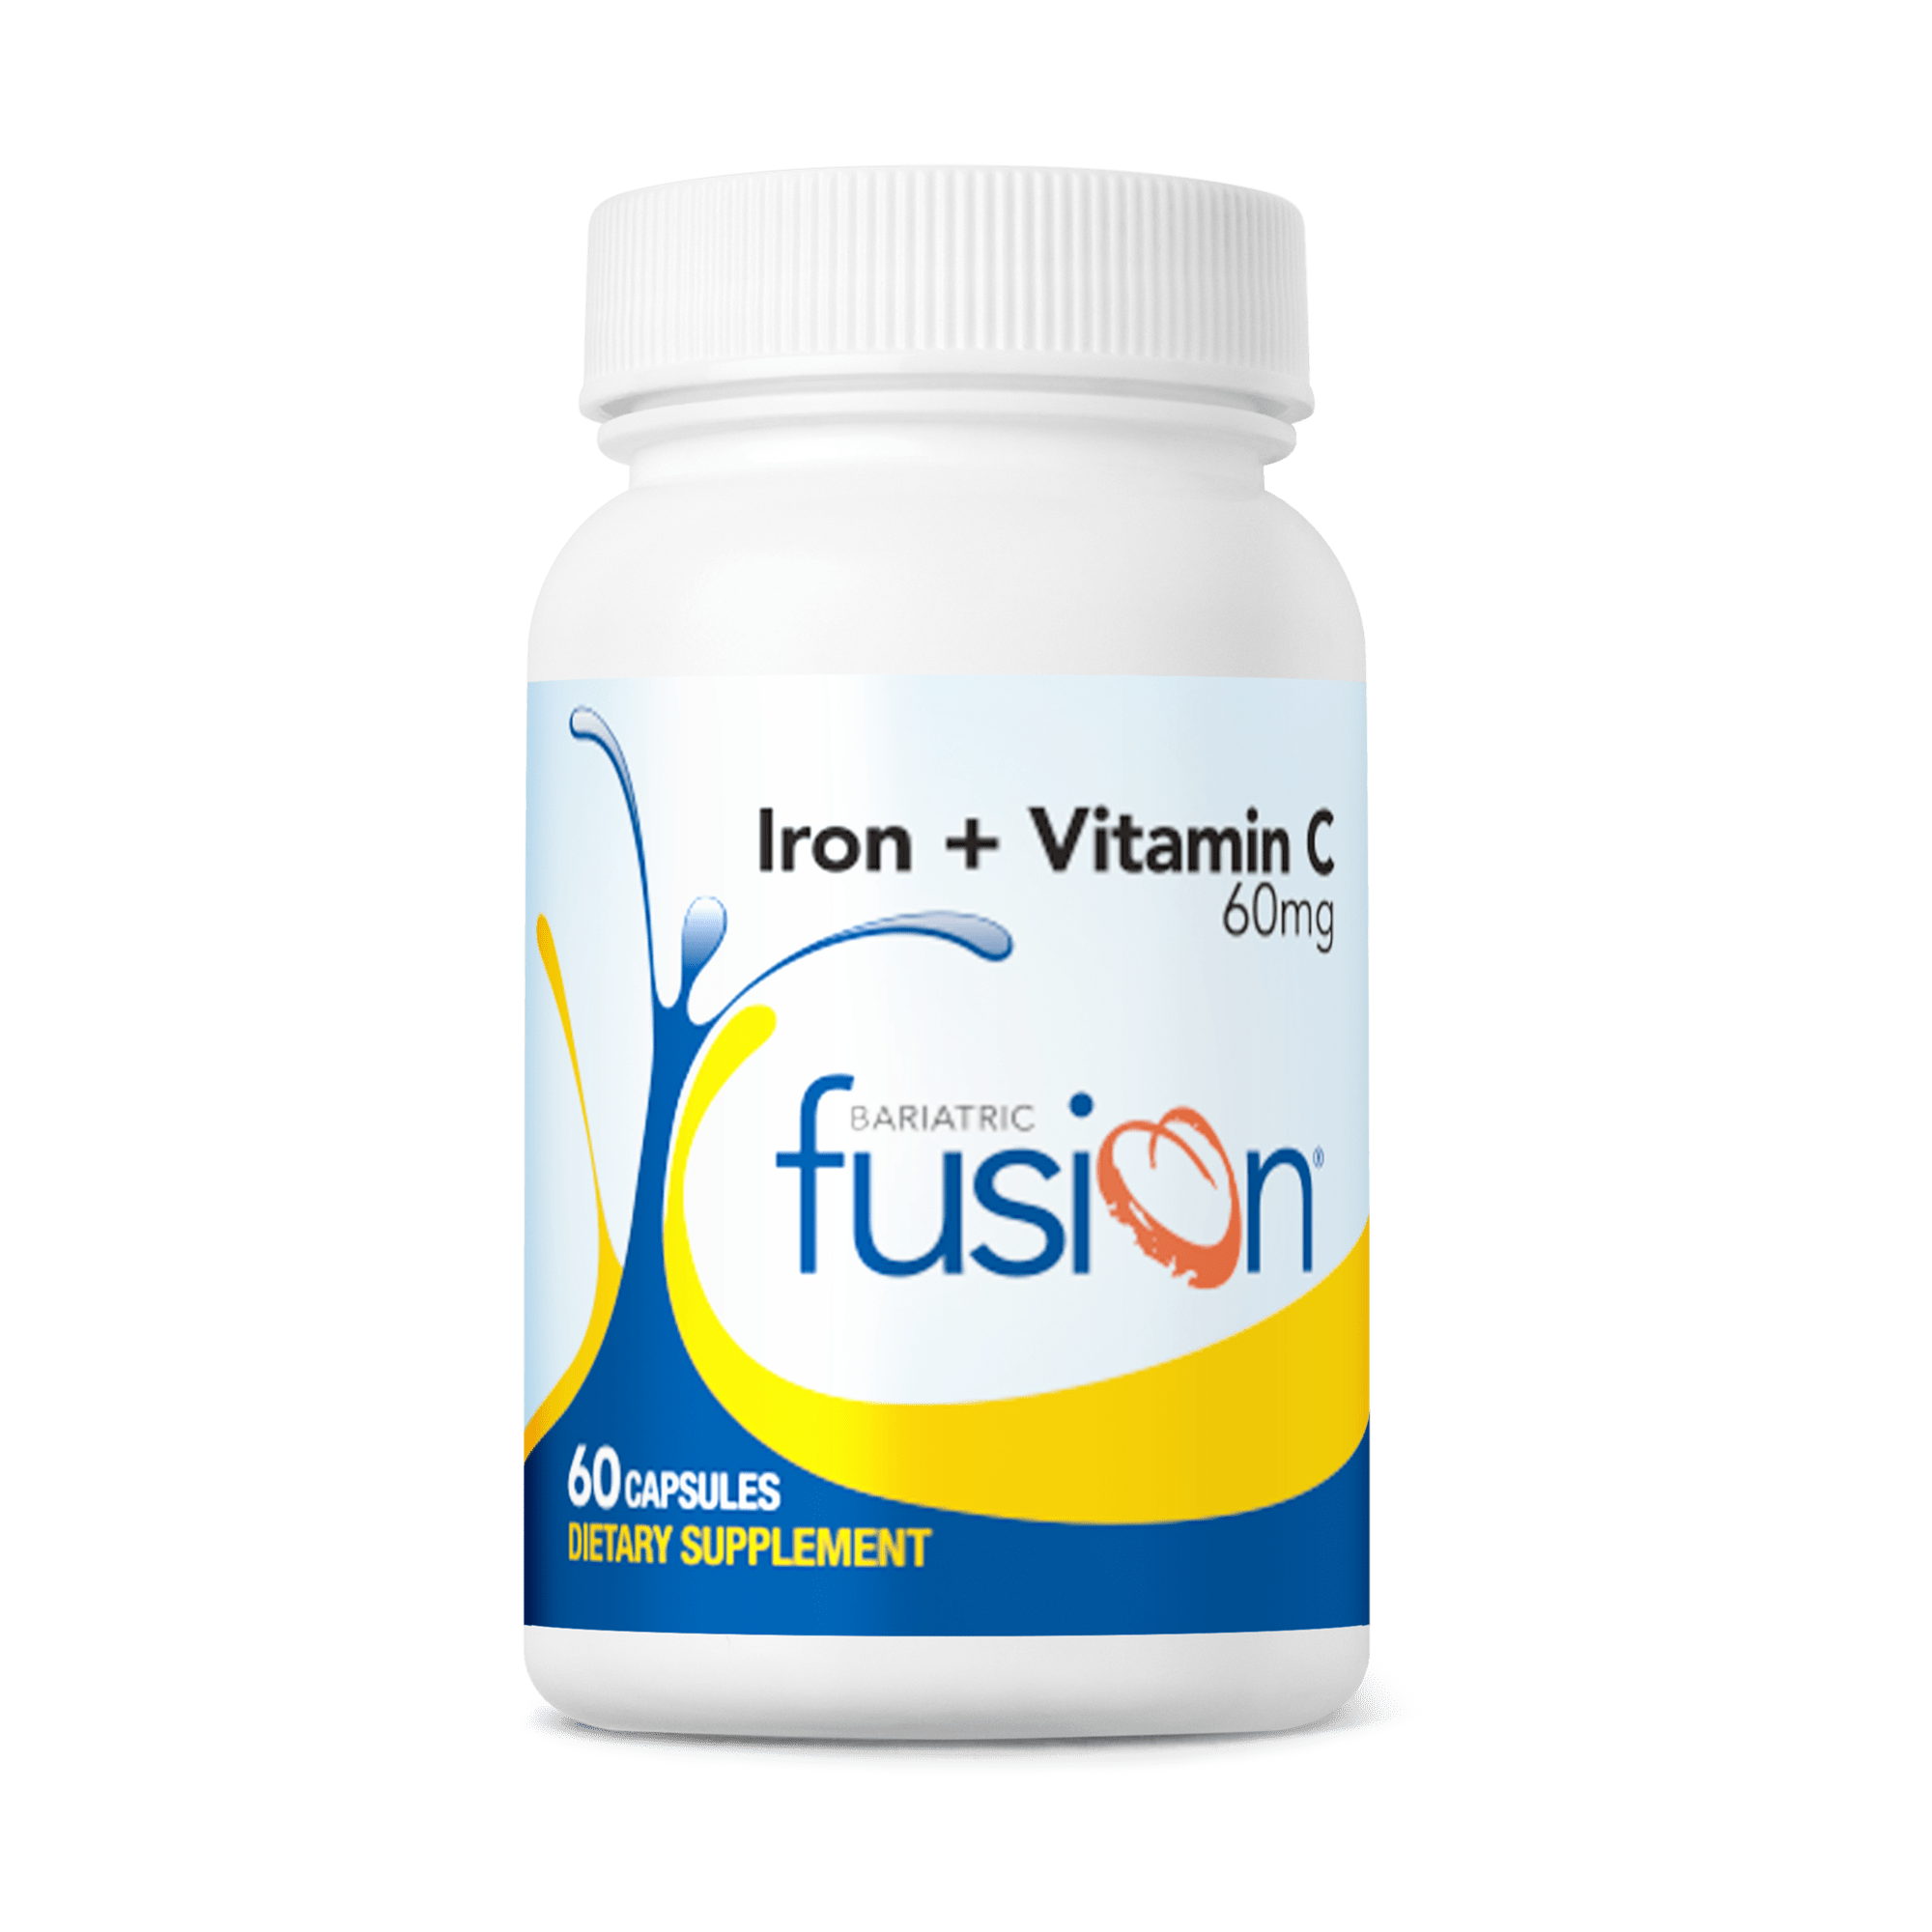 Bariatric Iron Capsule with Vitamin C - Bariatric Fusion